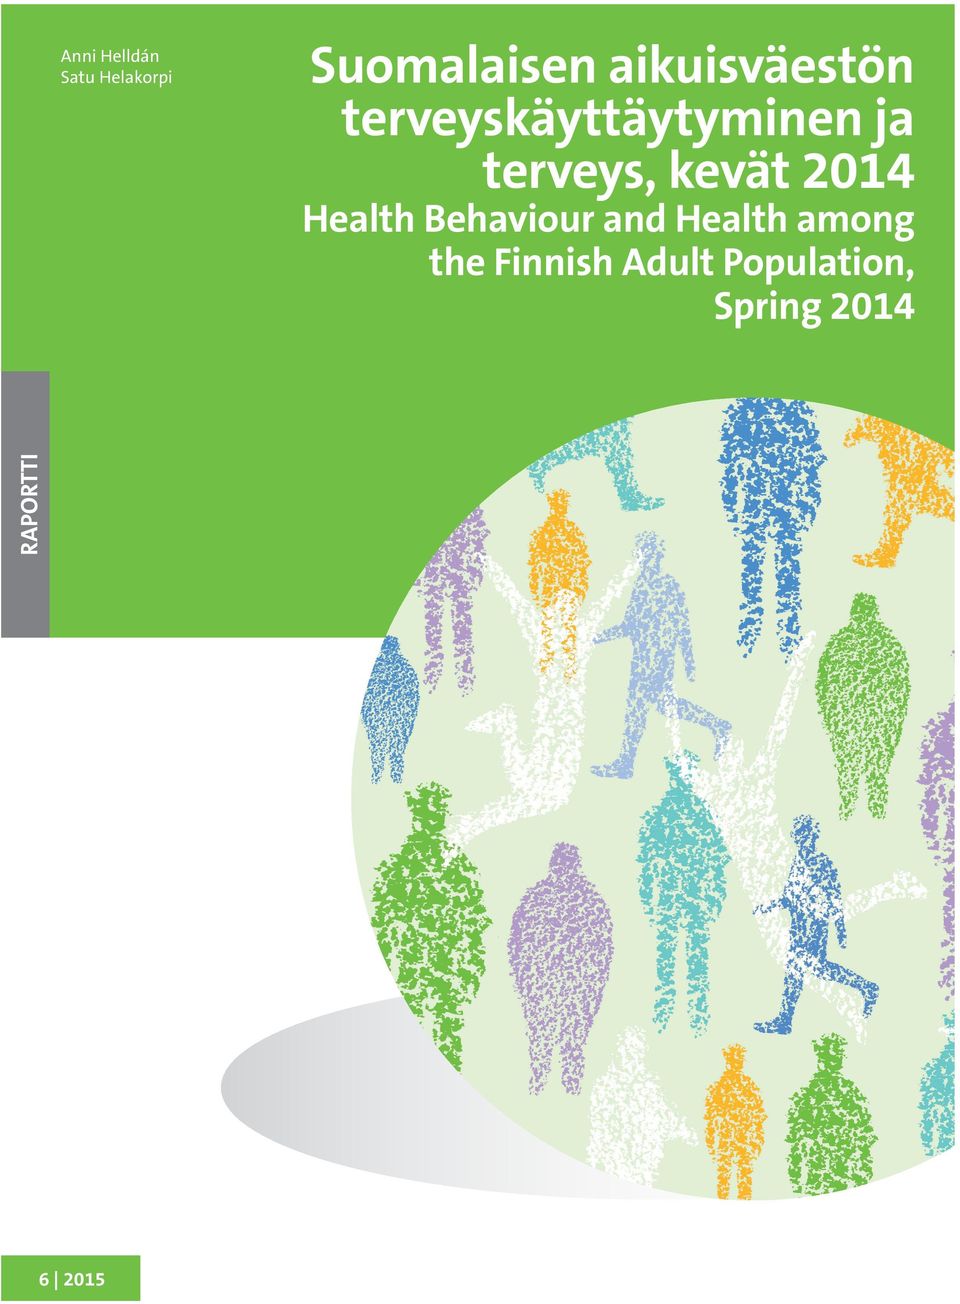 Suomalaisen aikuisväestön terveyskäyttäytyminen ja terveys, kevät 2014 Raportissa esitetään Suomalaisen aikuisväestön terveyskäyttäytyminen ja terveys (AVTK) -tutkimuksen tulokset keväältä 2014.